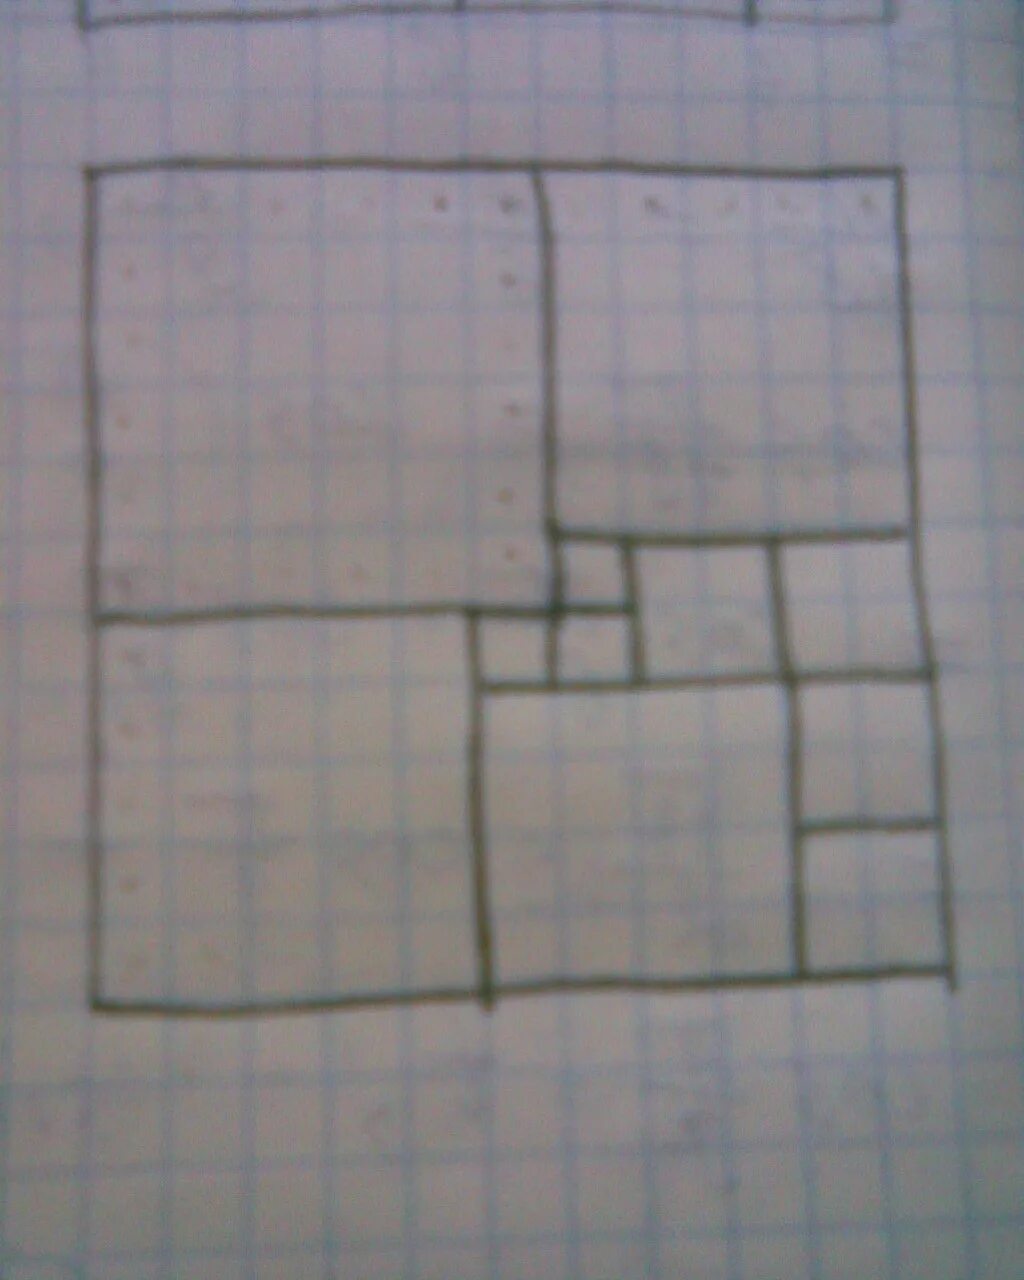 Разрежьте квадрат 11 на 11 по сторонам клеток на 11 квадратов. Разрежьте квадрат 11х11 по сторонам клеток на 11 квадратов. Разделить квадрат на 11 квадратов. Разрезать квадрат на 11 квадратов.